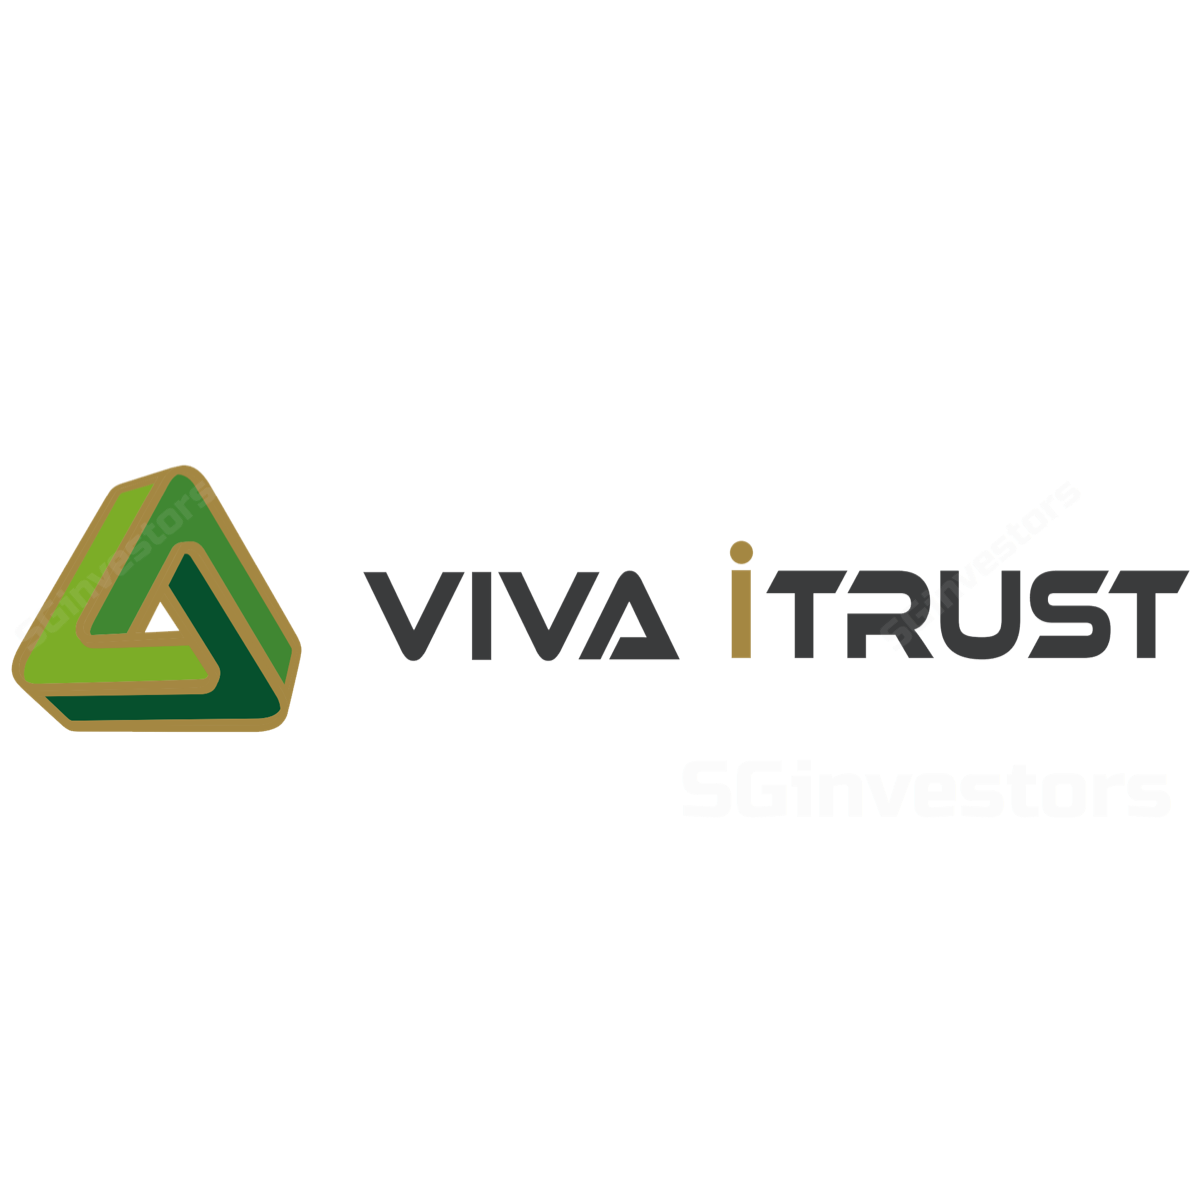 Viva Industrial Trust - OCBC Investment 2018-05-21: Vis-à-vis La Viva